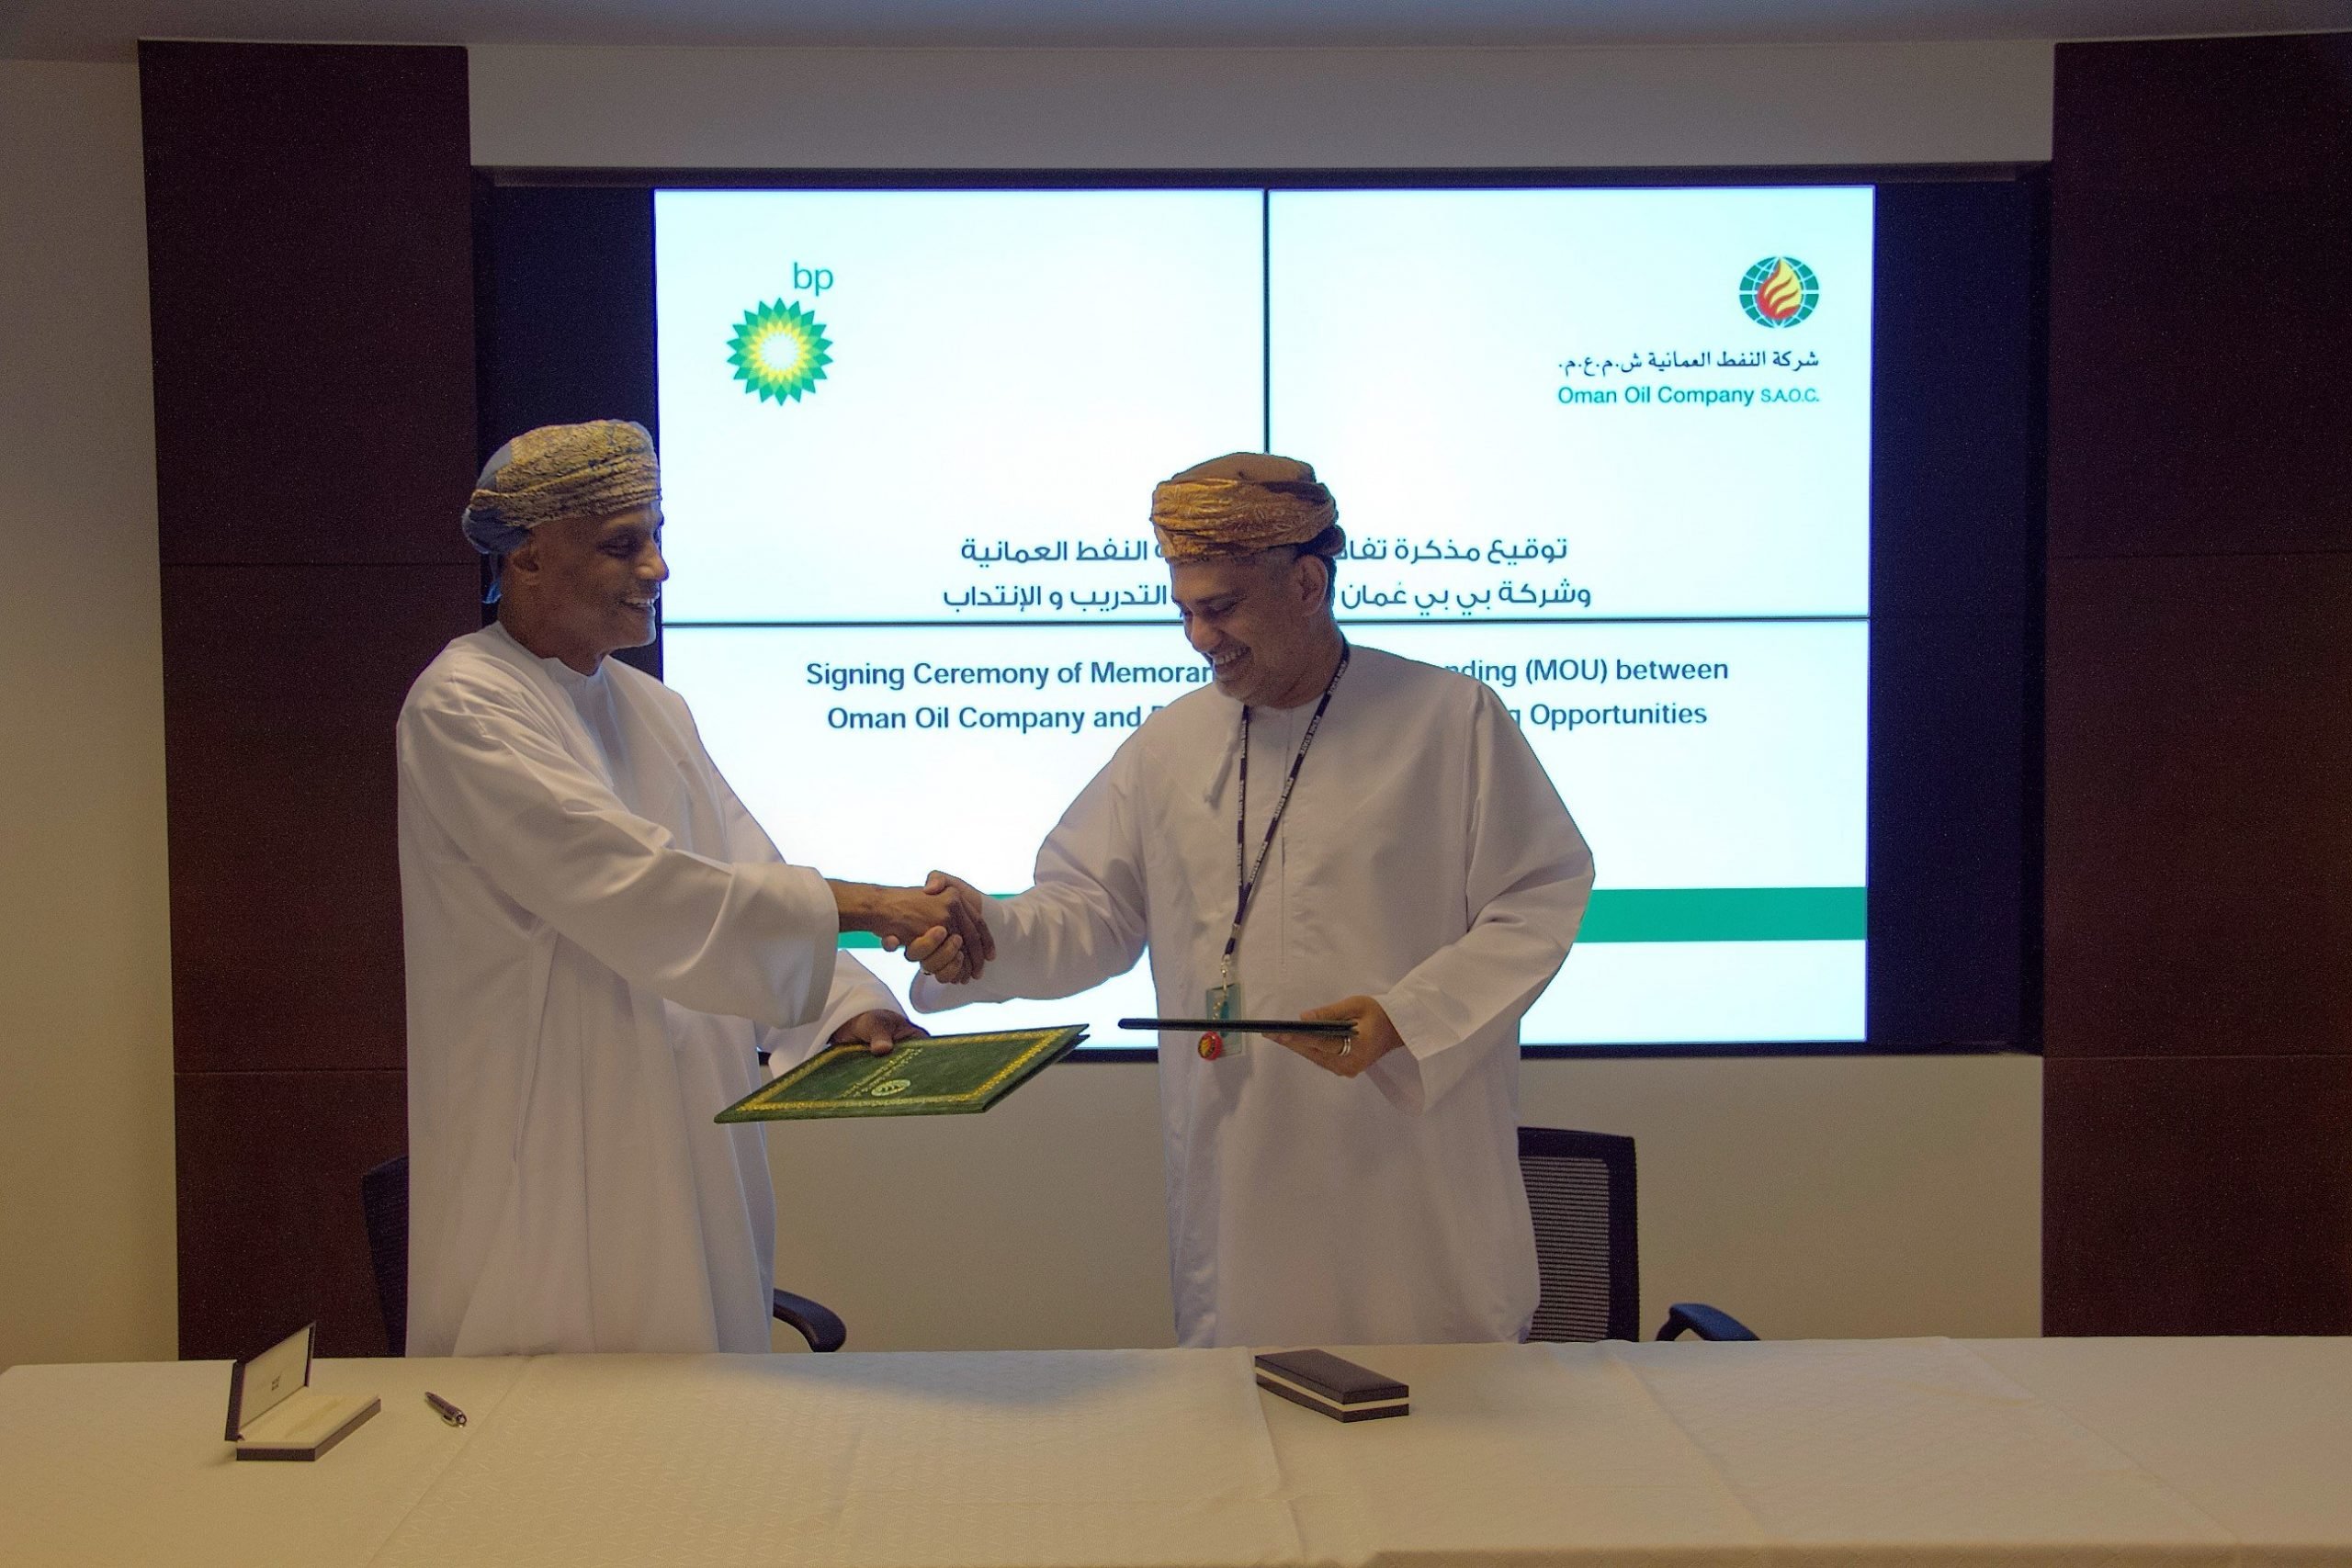 خلال توقيع اتفاق بين شركة النفط العمانية وبي بي عمان عام 2018 